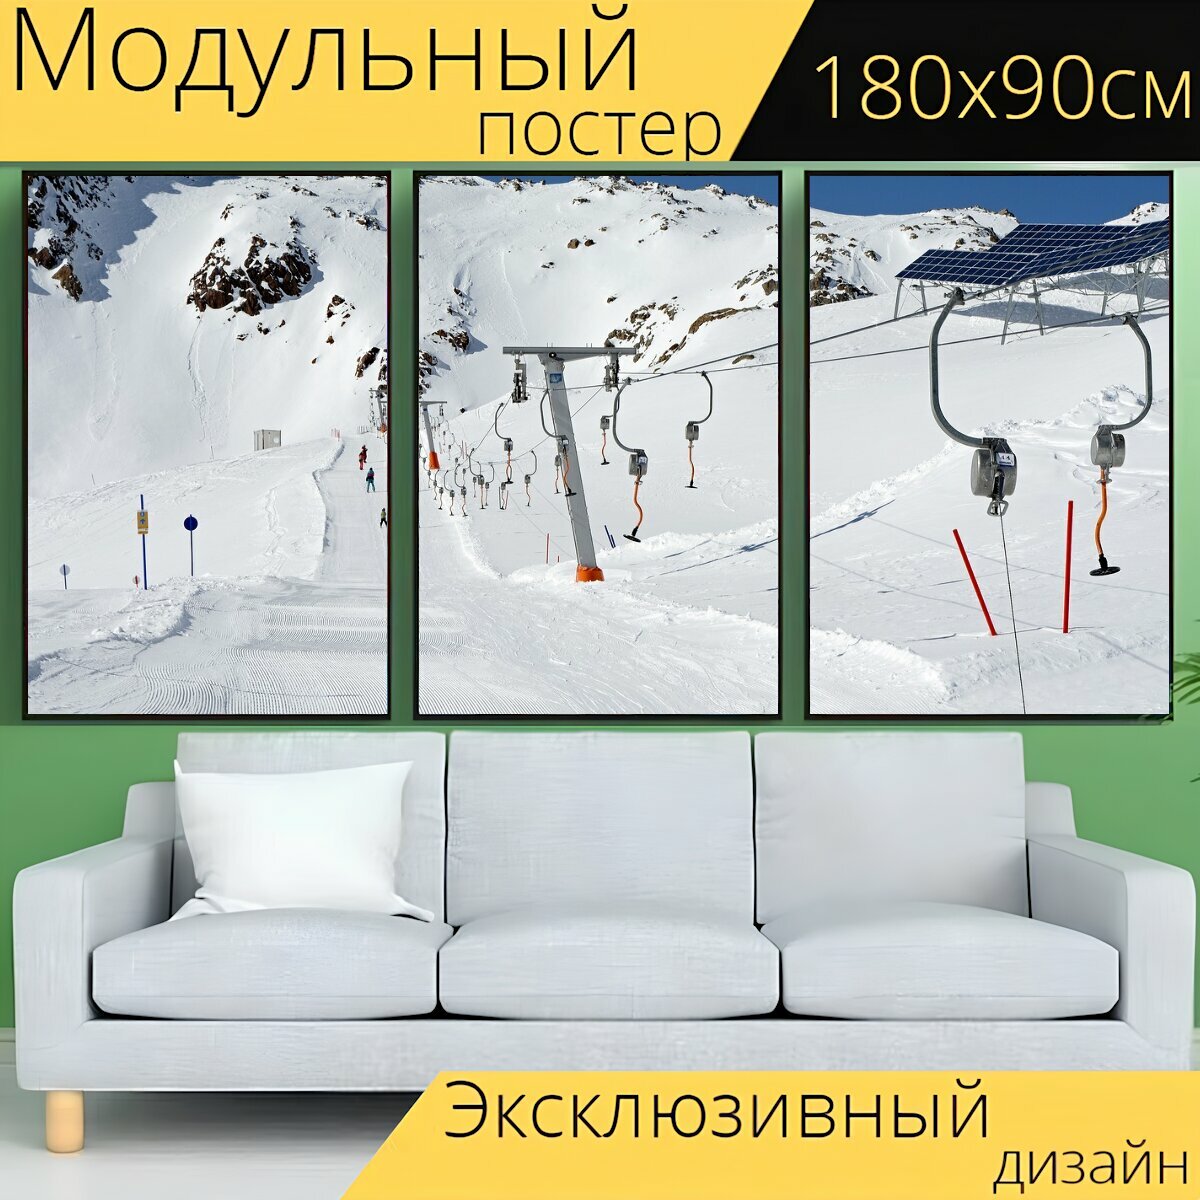 Модульный постер "Горнолыжный подъемник, кататься на лыжах, зима" 180 x 90 см. для интерьера